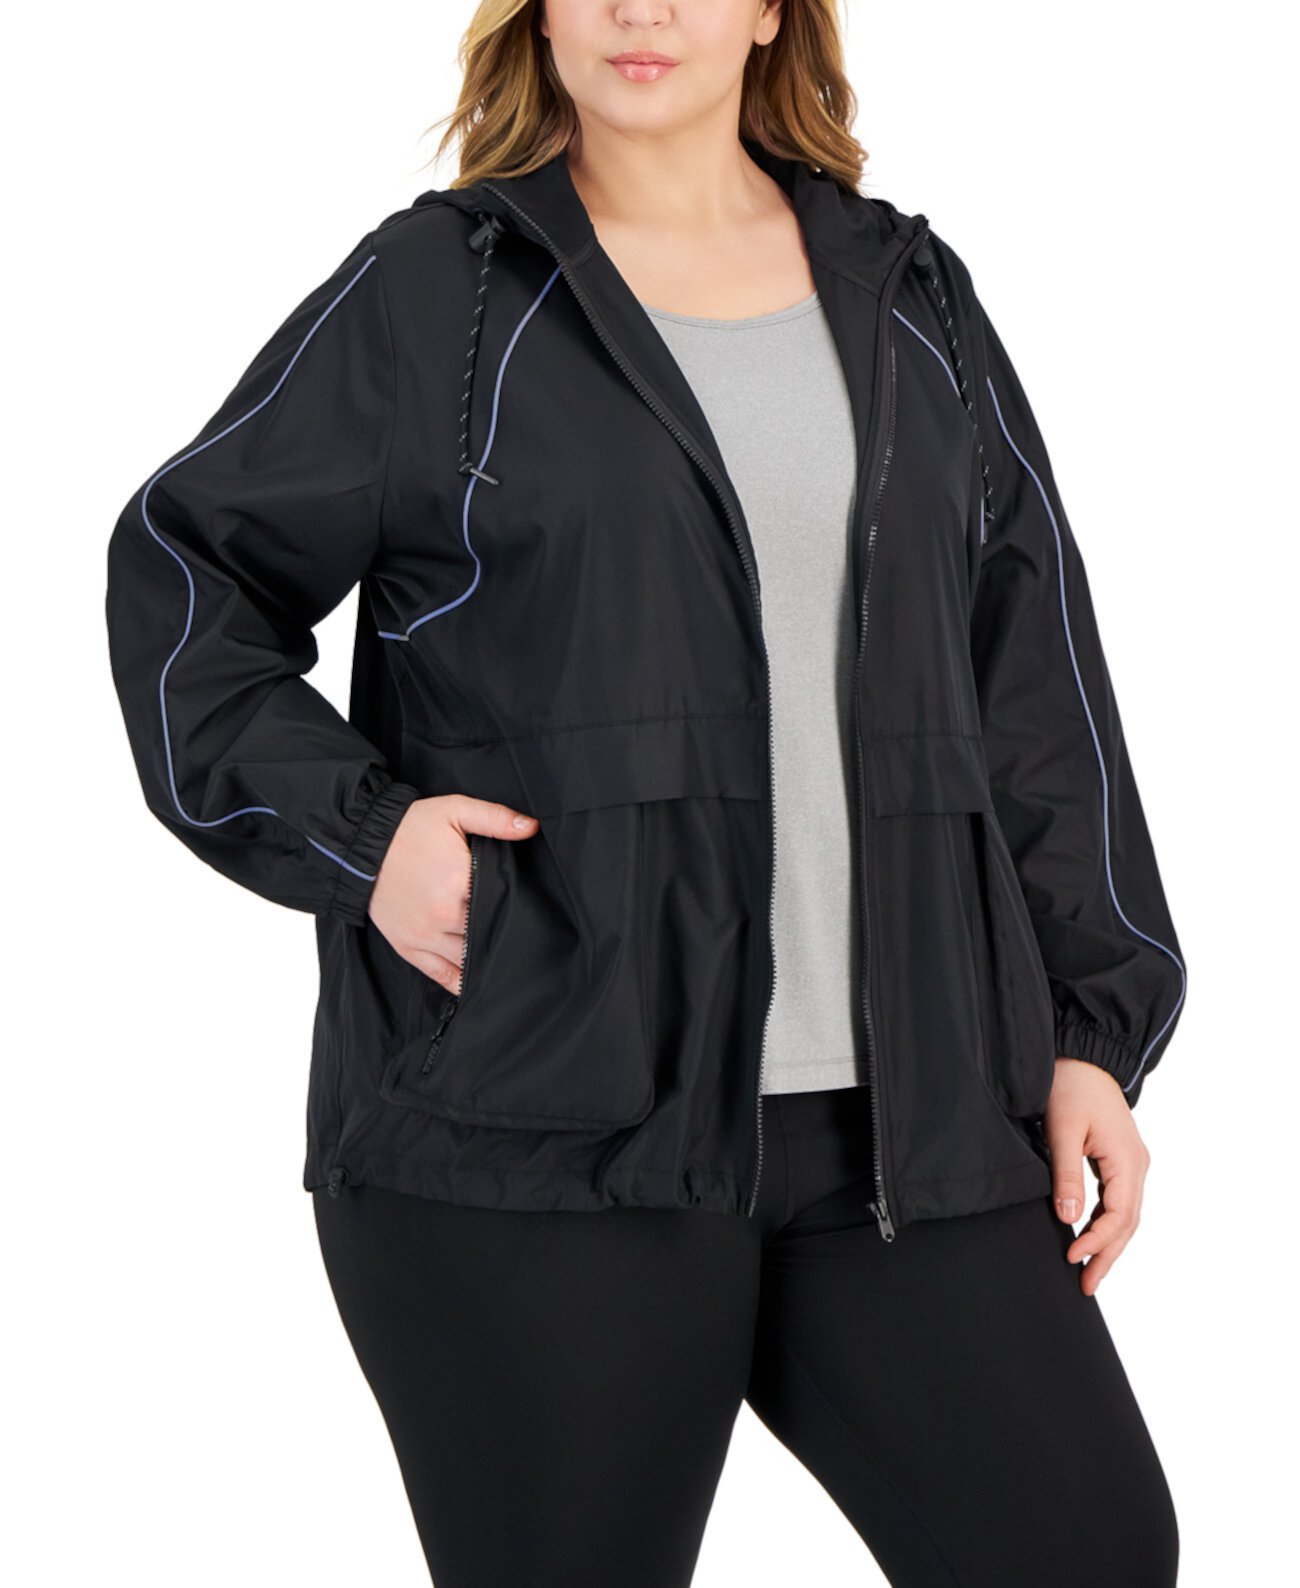 Складная куртка больших размеров с капюшоном на молнии спереди, созданная для Macy's ID Ideology